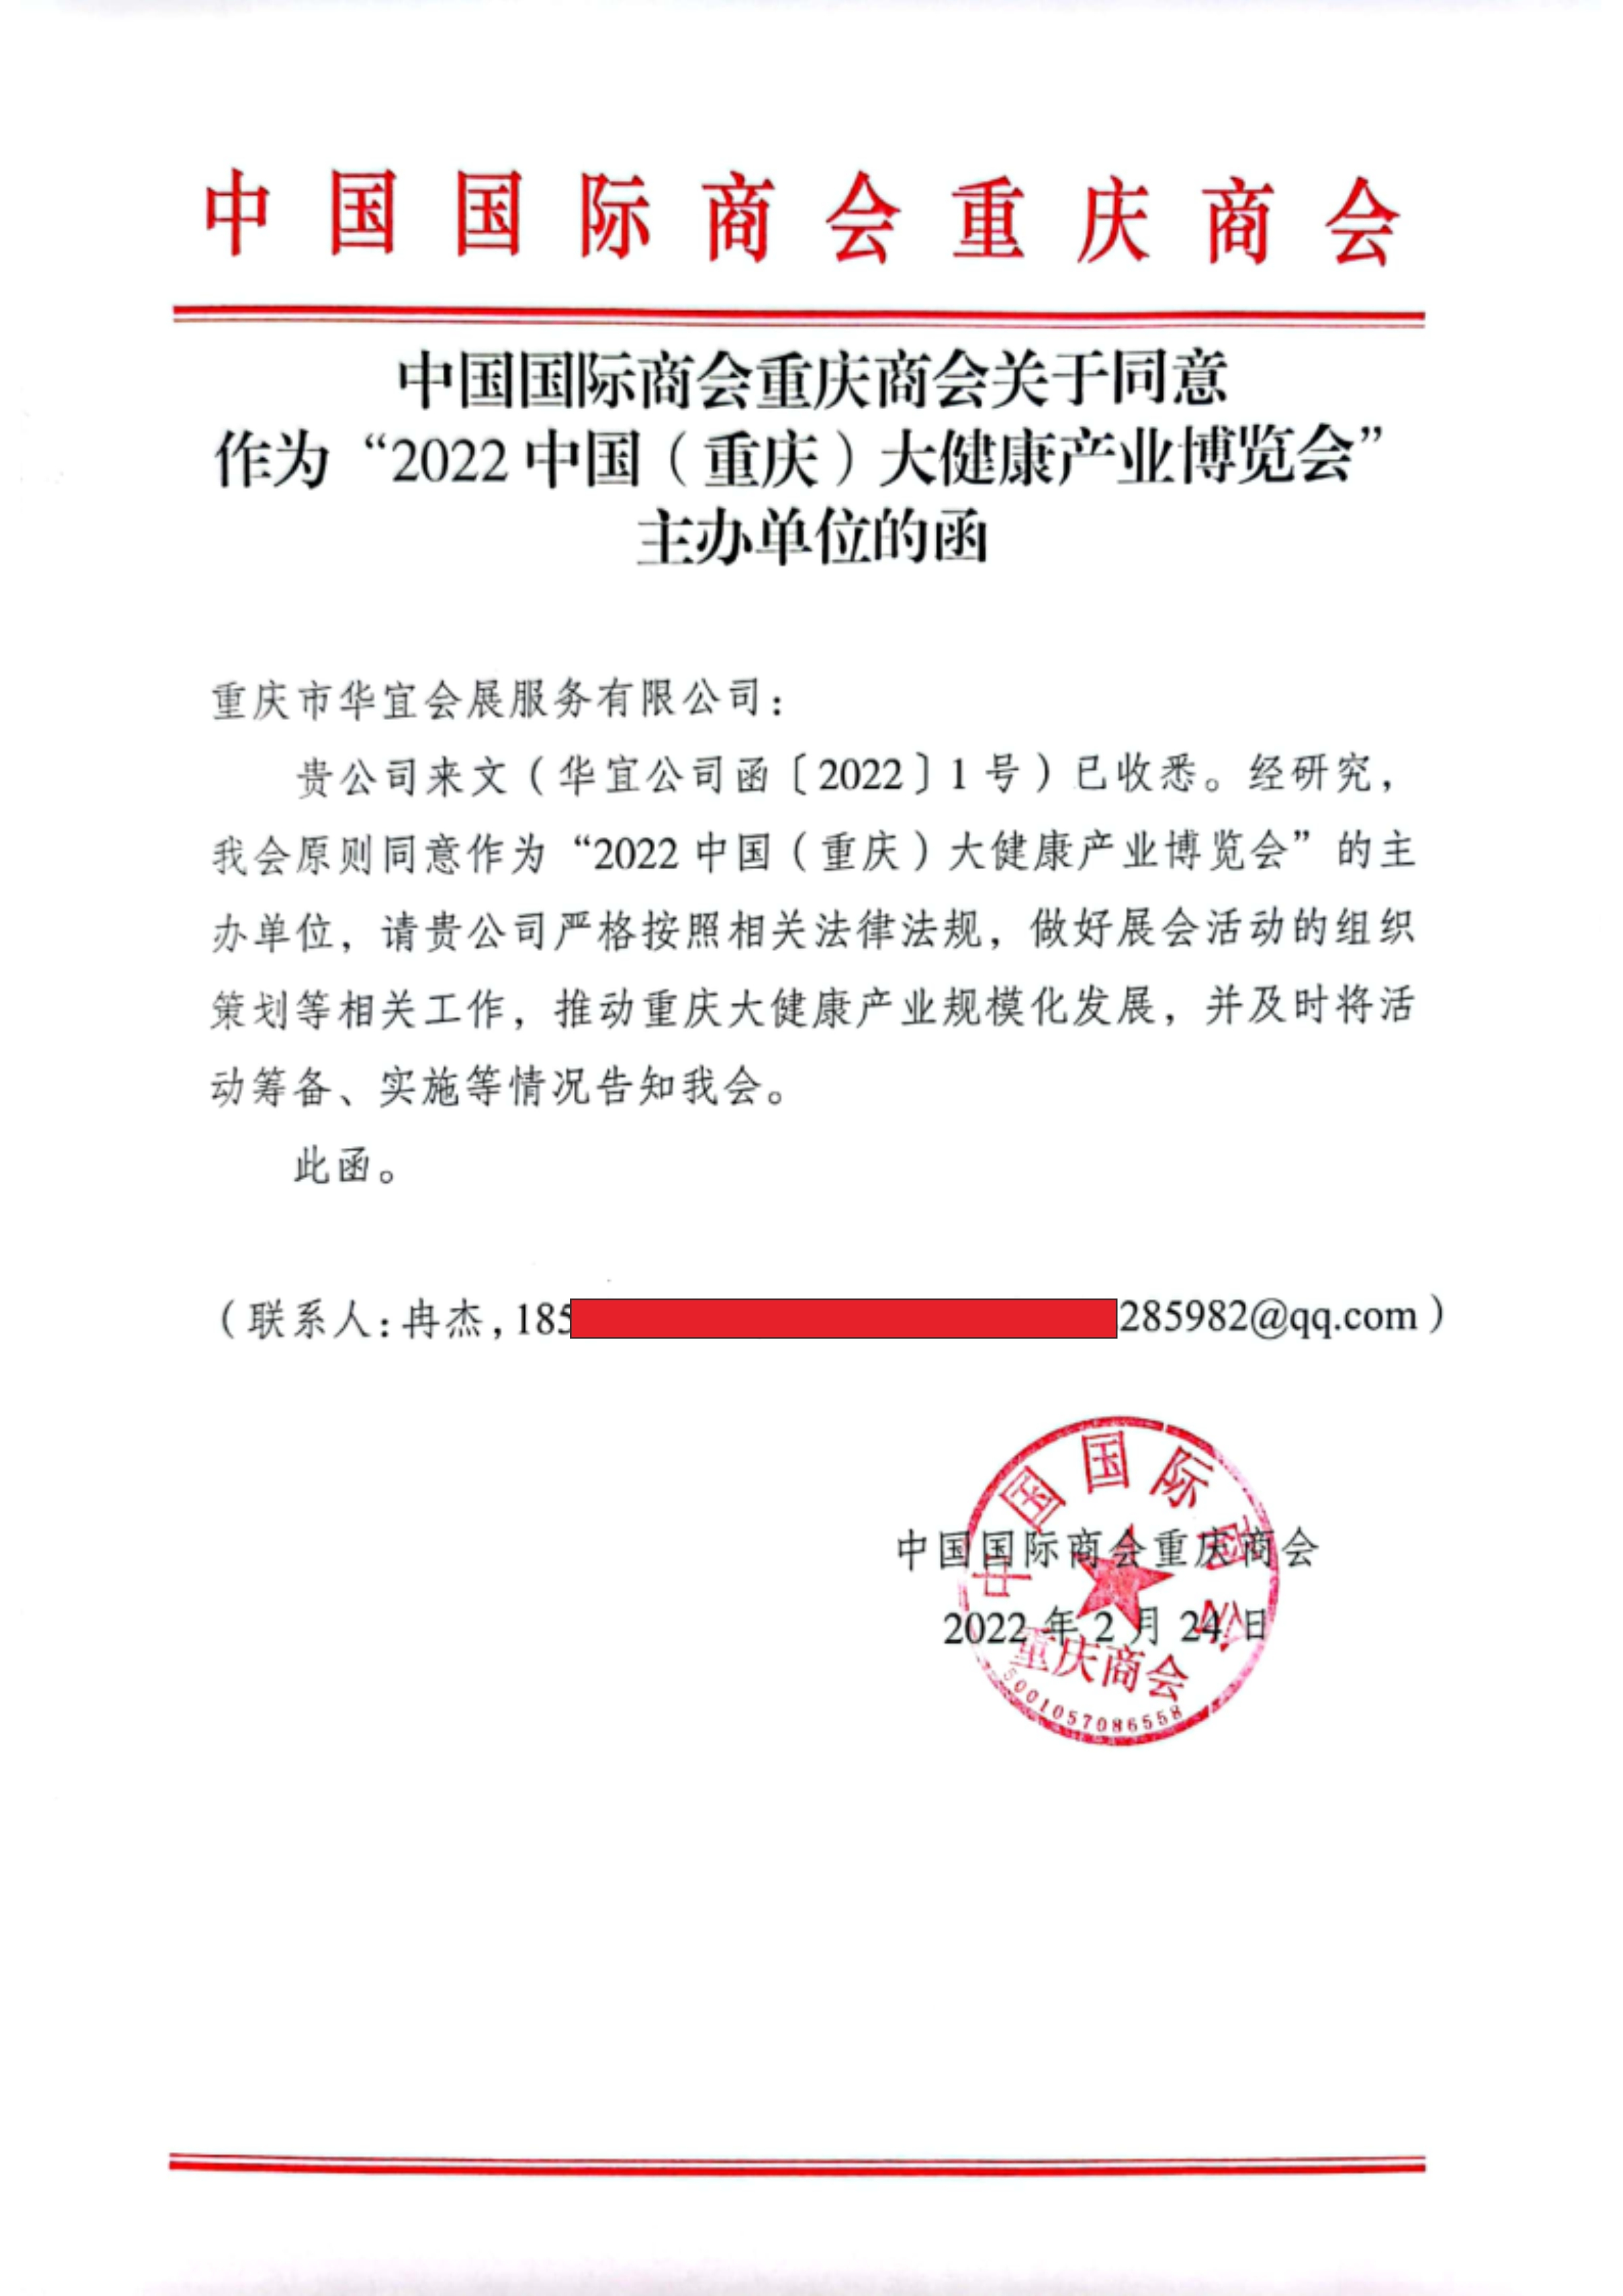 中国国际商会重庆商会关于同意作为2022中国（重庆）大健康产业博览会主办单位的函.jpg